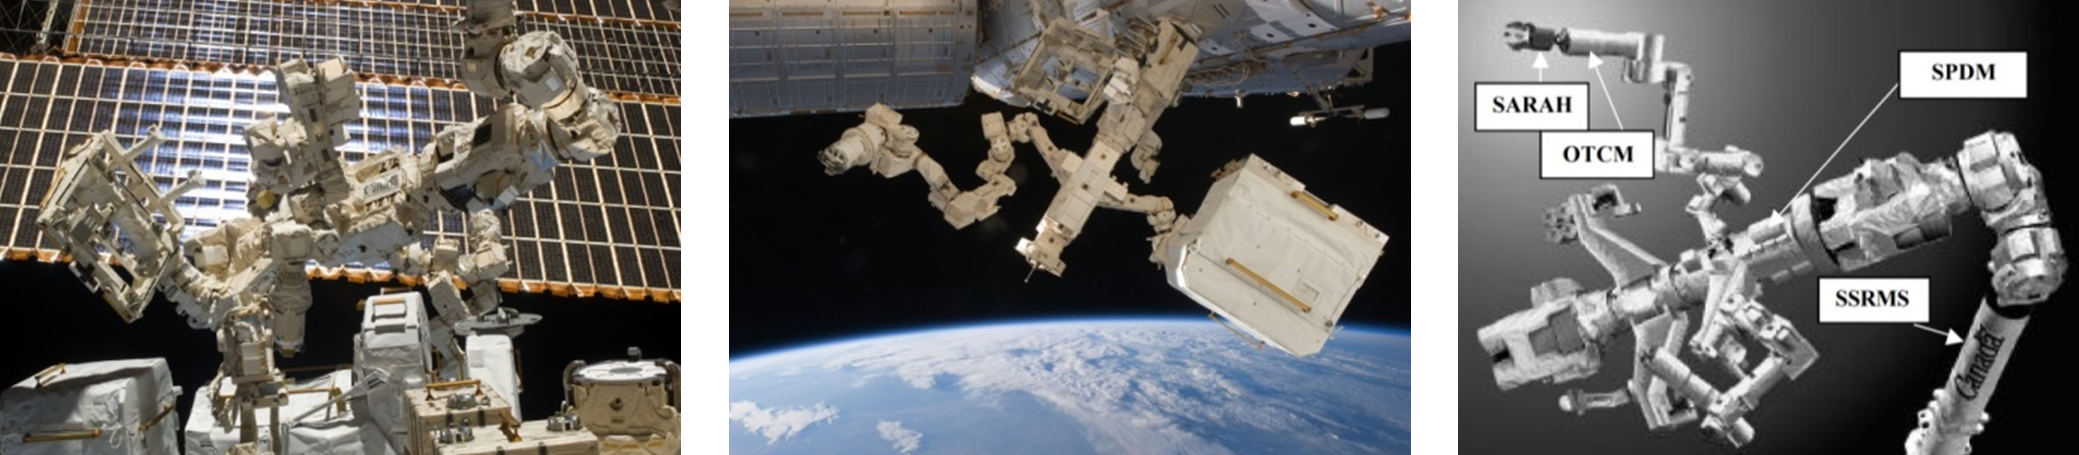 Dextre desde el exterior de la ISS.